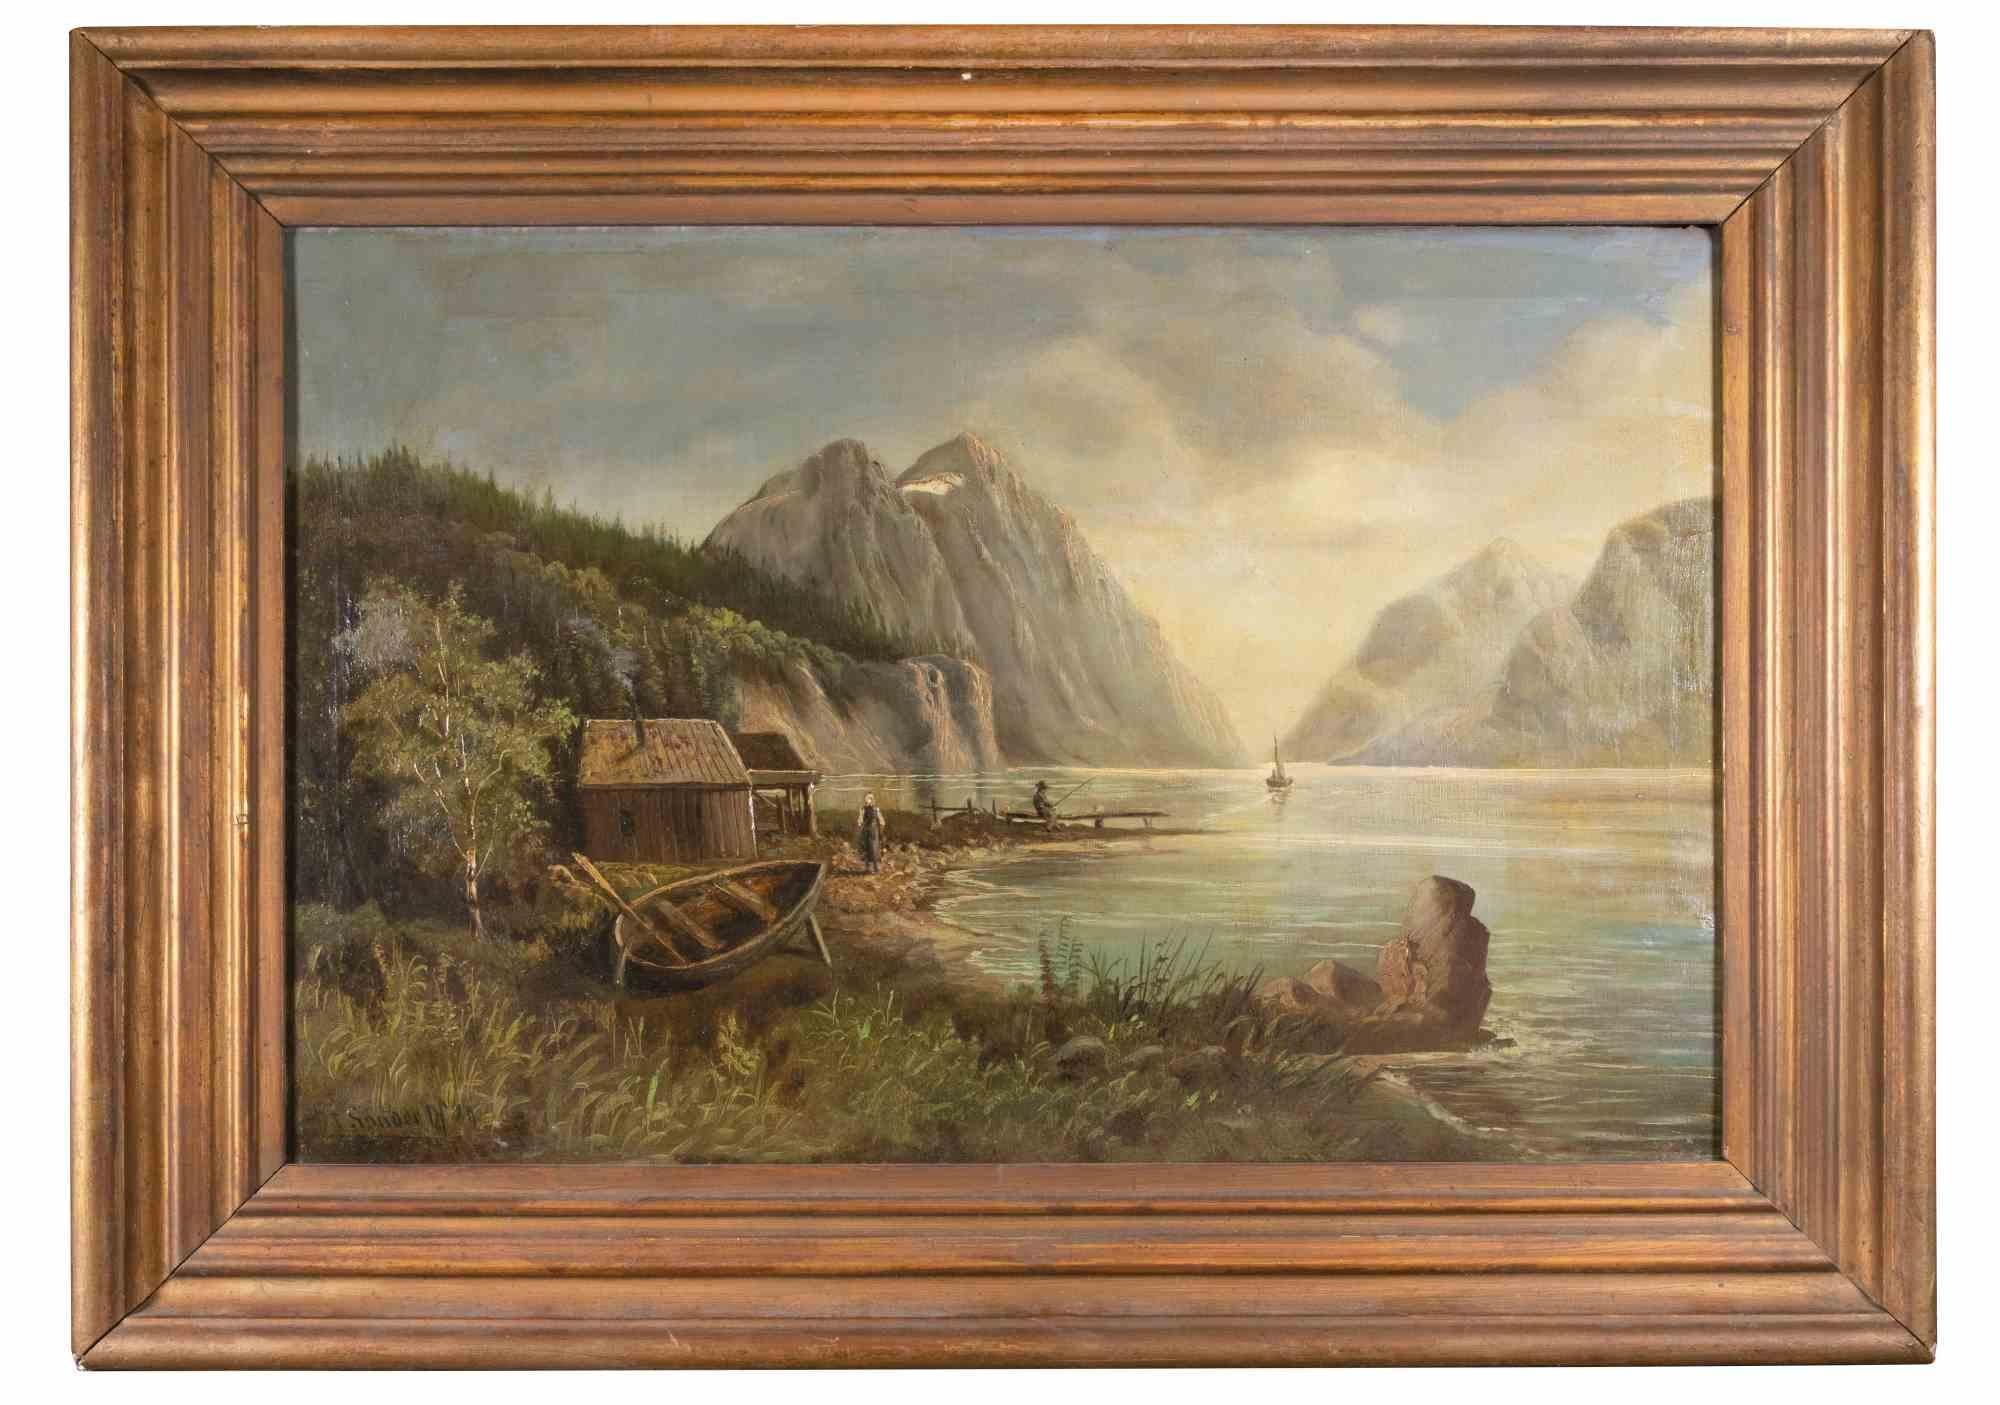 Le lac est une peinture à l'huile réalisée en 1989 et attribuée à Tom Sander.

Peinture à l'huile de couleurs mélangées sur toile.

Cadre inclus : 66 x 5 x 90 cm
